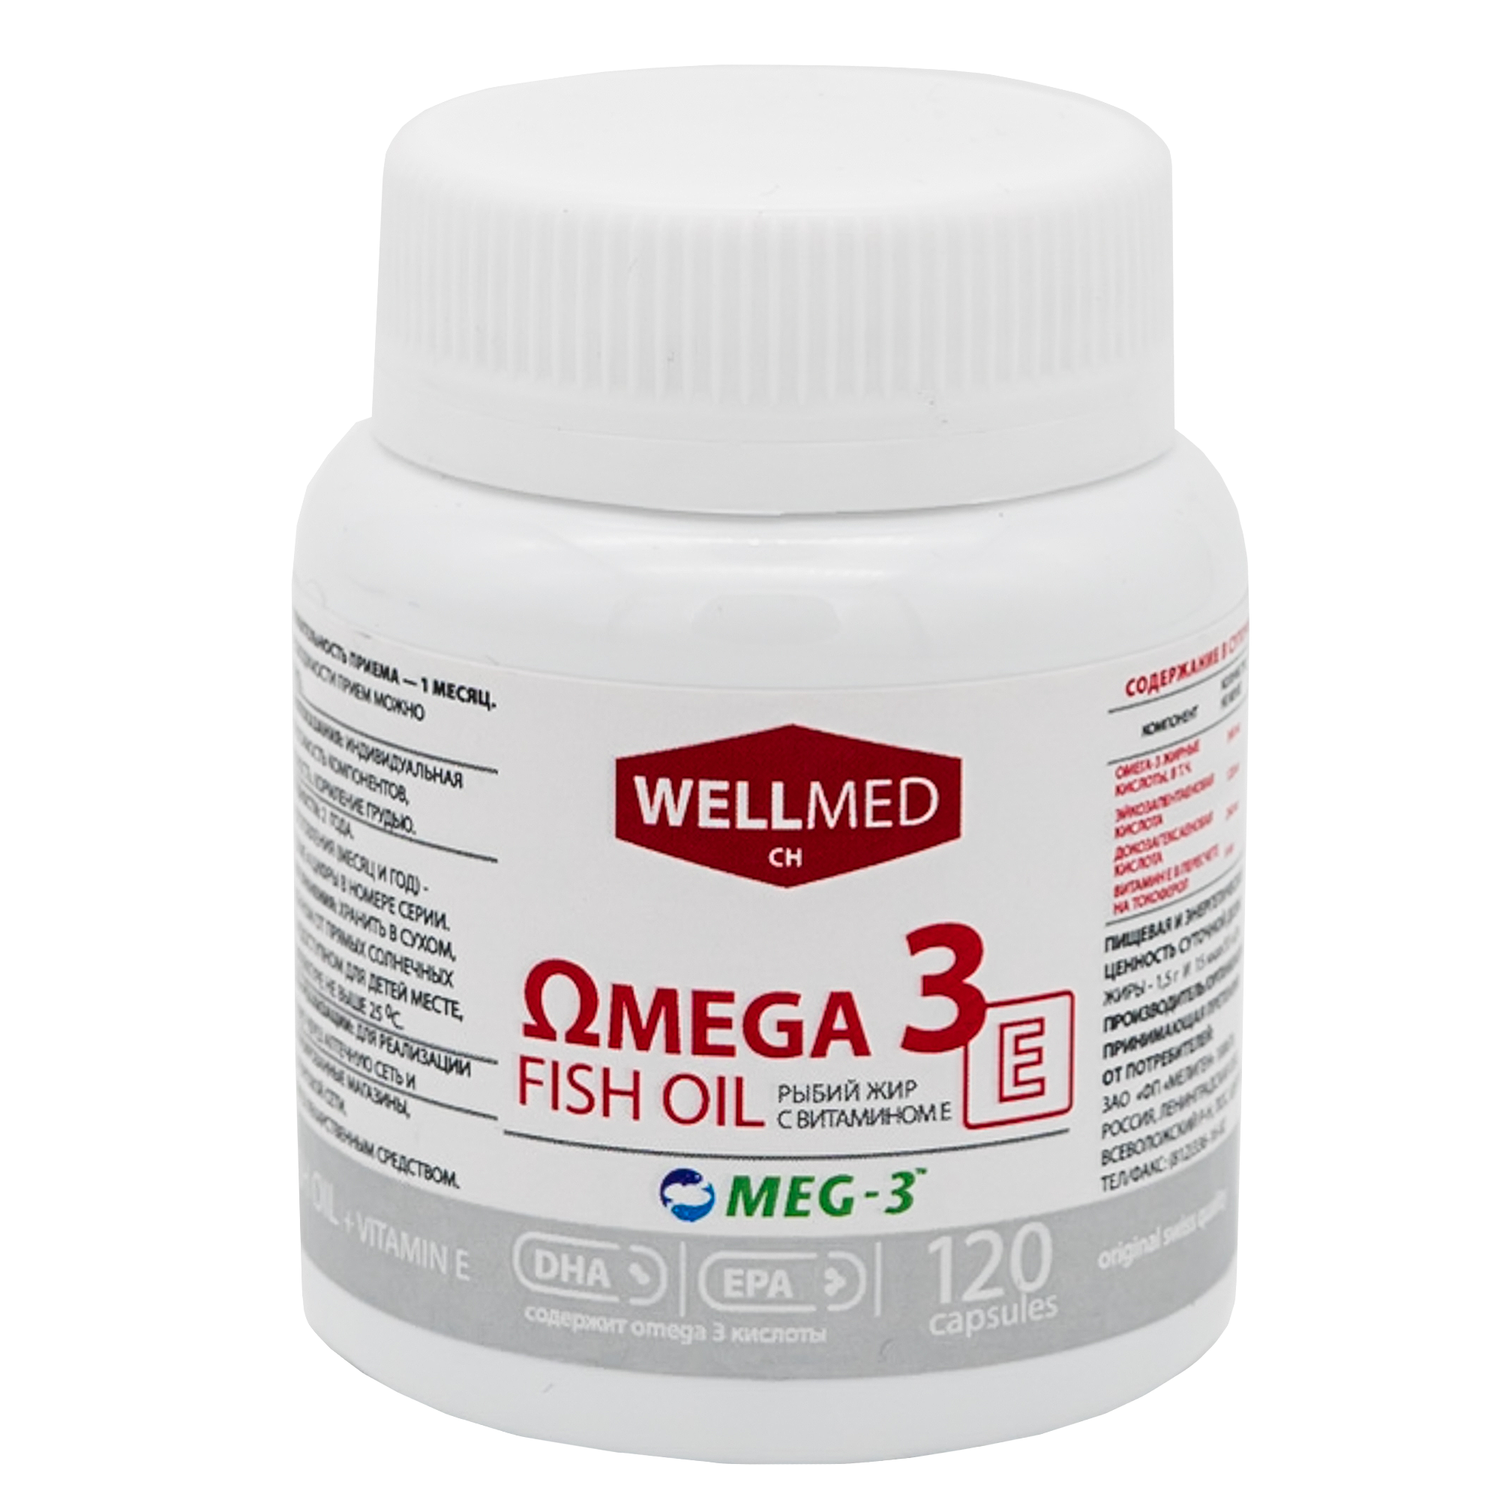 Концентрат Omega 3 для женщин WELLMED Рыбий жир с витамином E 120 капсул Fish oil - фото 15